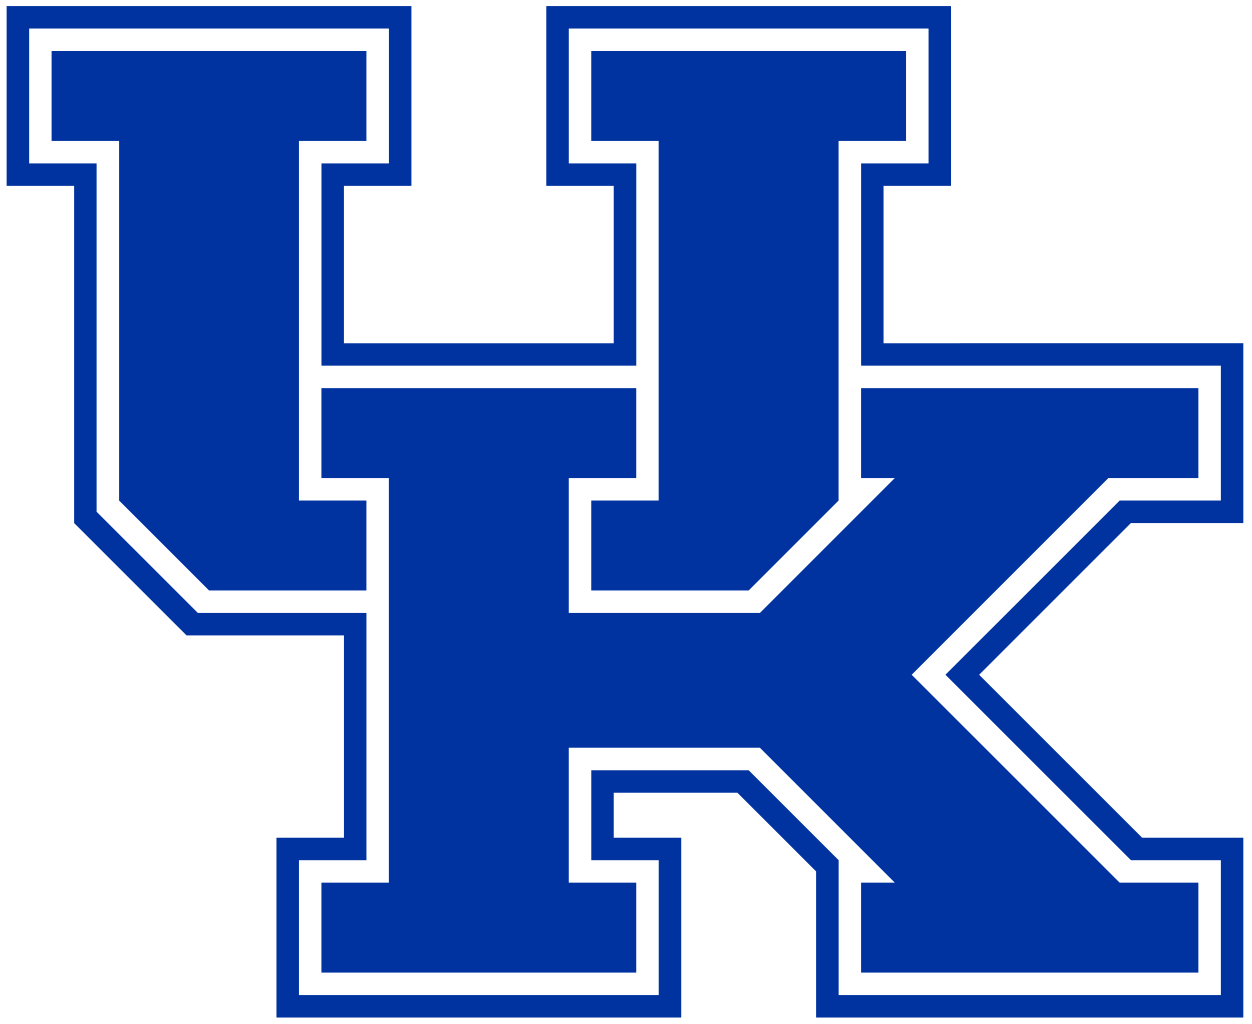 1252px-Kentucky_Wildcats_logo.svg.png